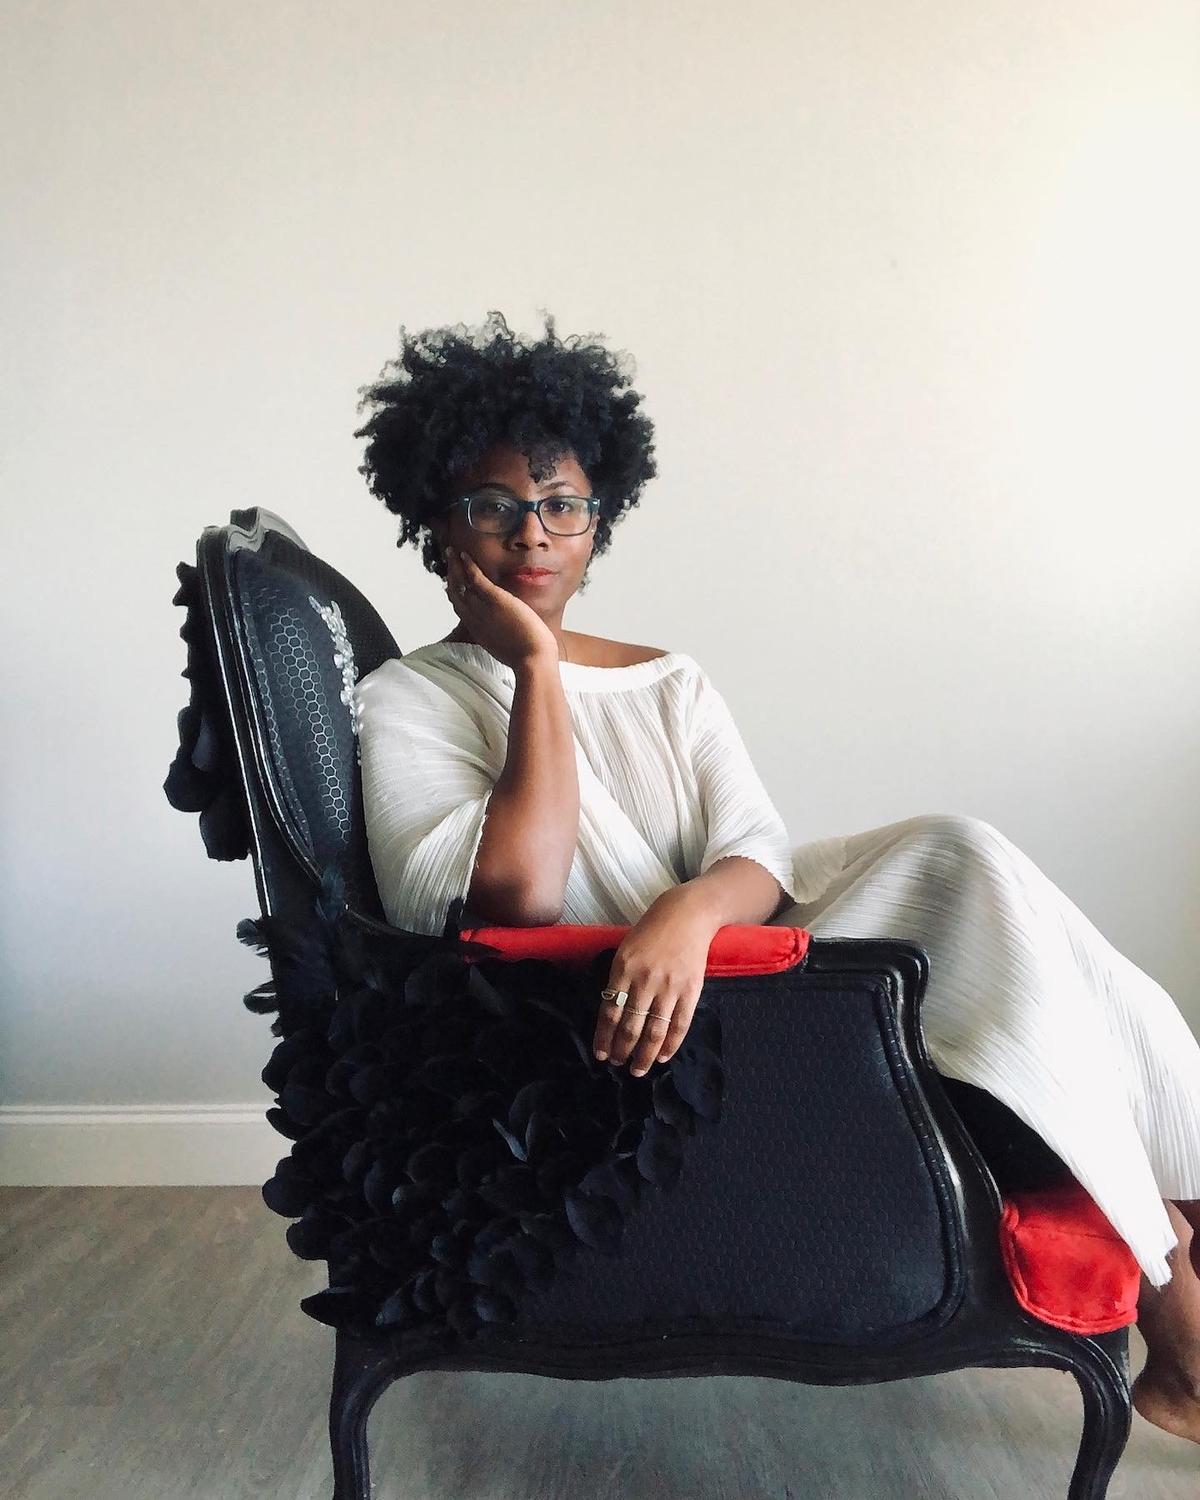 From meditation pillows to Alexander McQueen: Meet a next-wave upholstery solopreneur